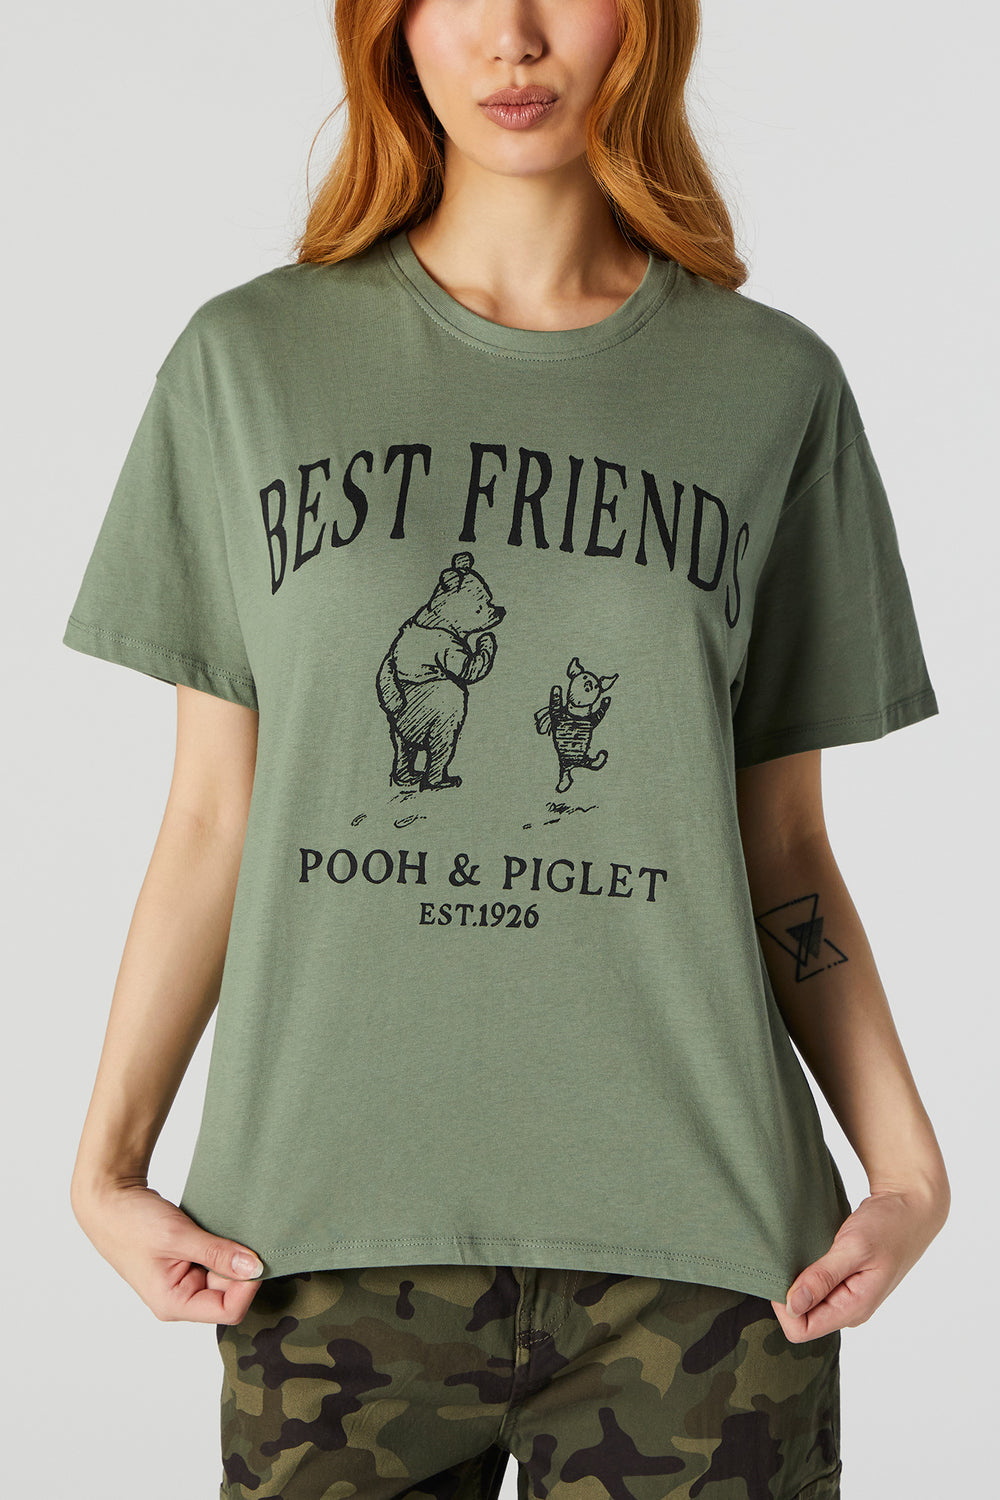 Best Friends Pooh and Piglet Graphic Boyfriend T-Shirt Best Friends Pooh and Piglet Graphic Boyfriend T-Shirt 1